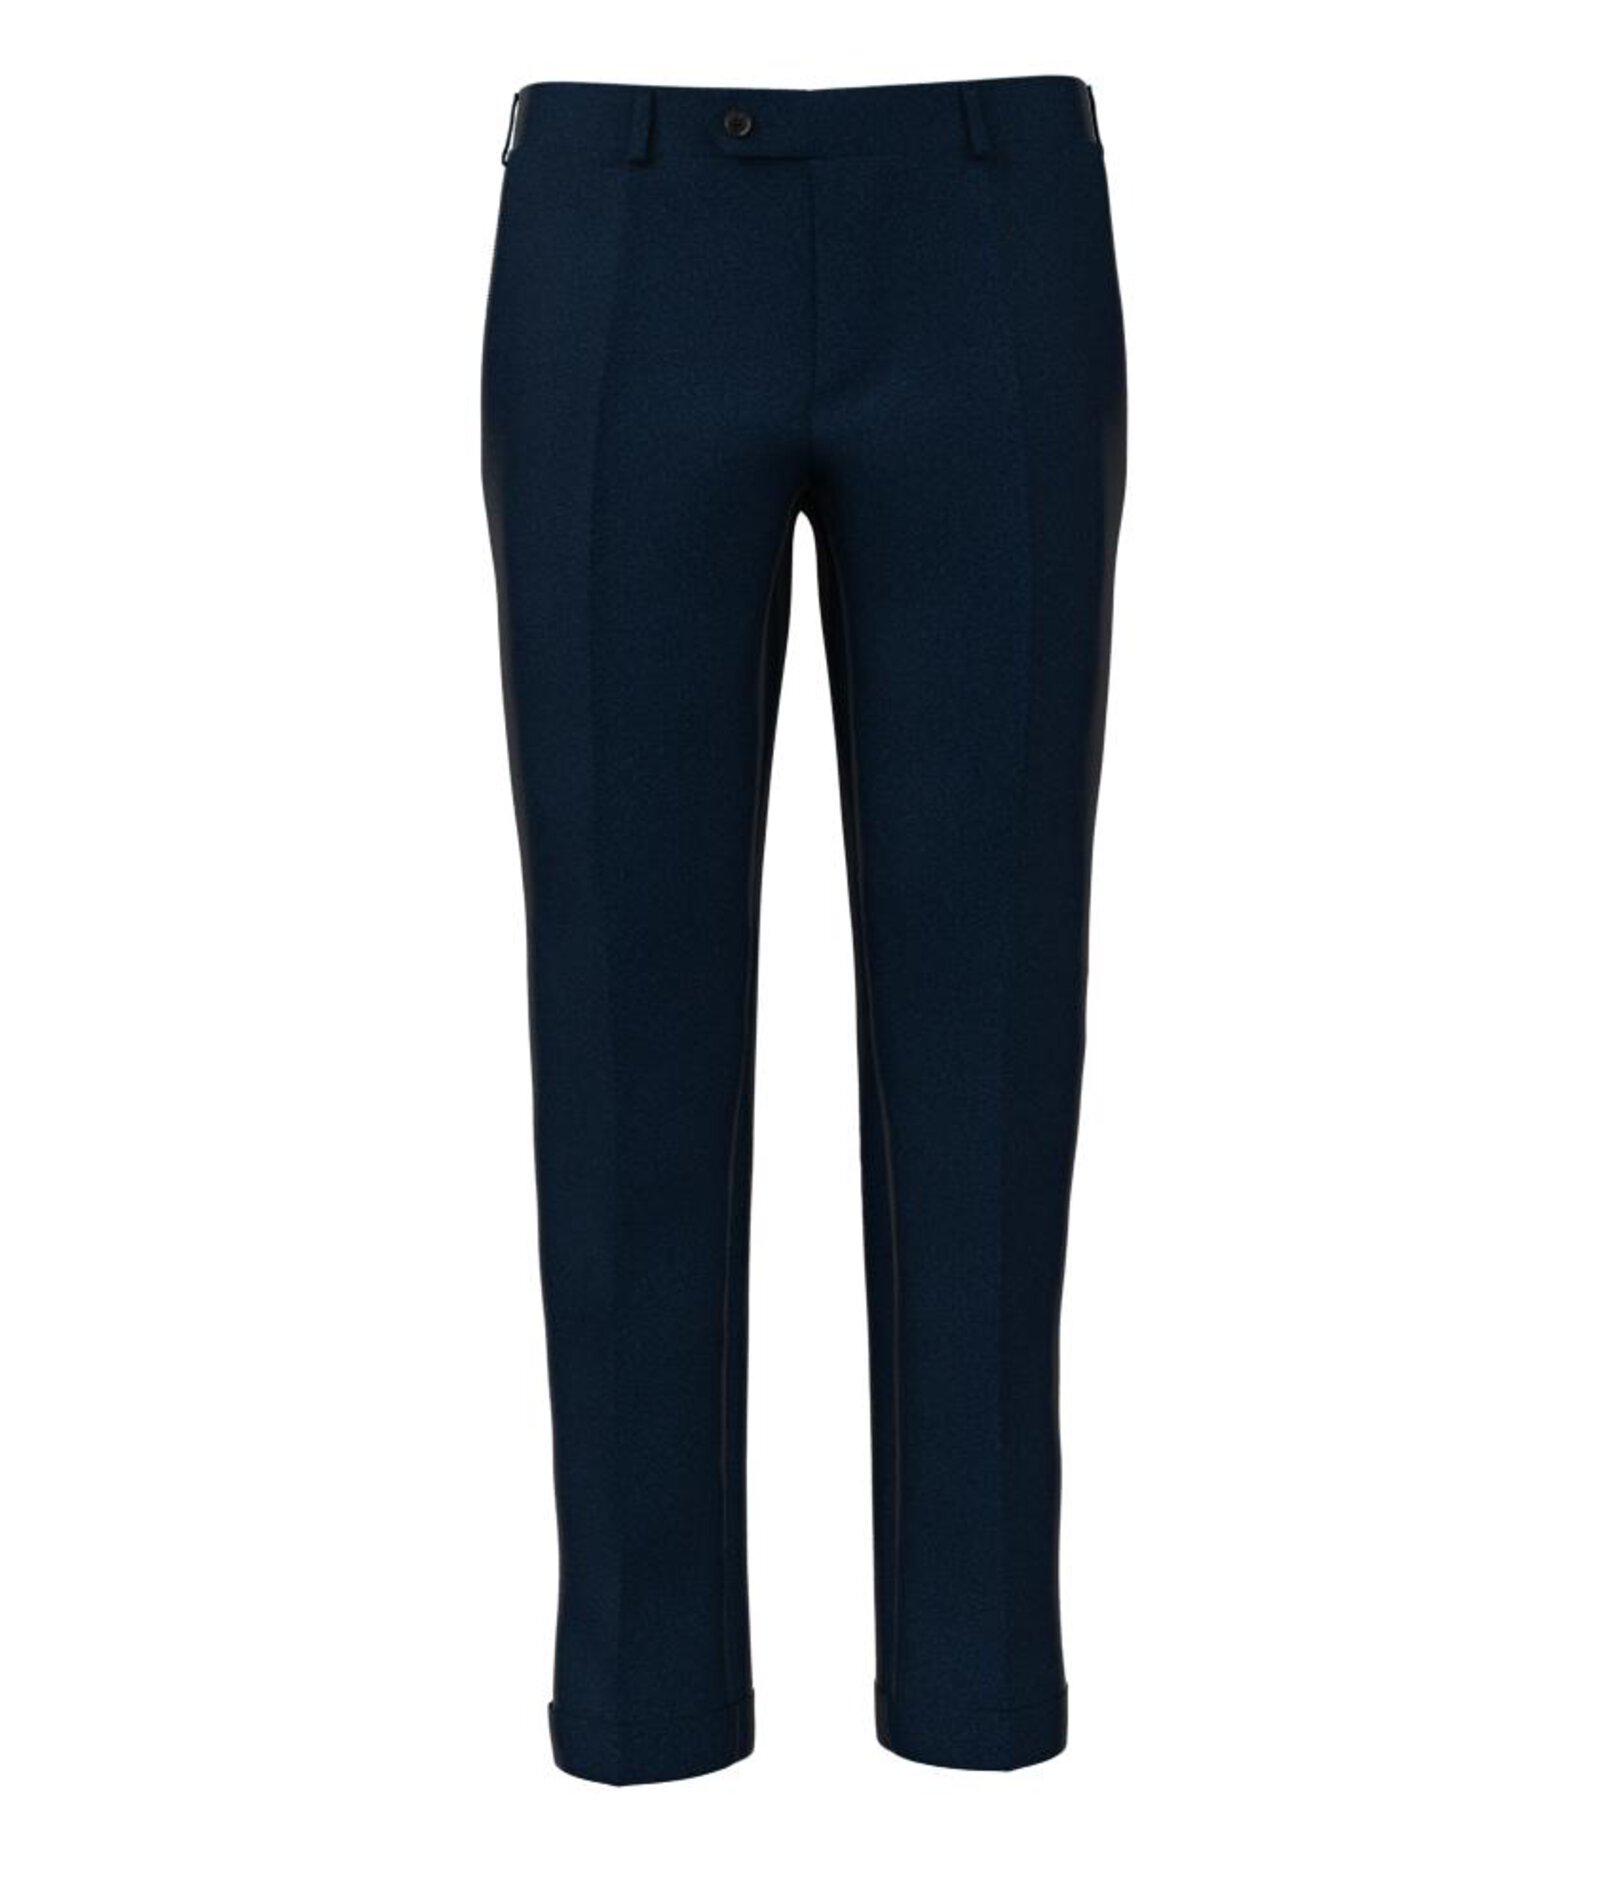 Image of Pantaloni da uomo su misura, Vitale Barberis Canonico, Blu Flanella Cardata, Autunno Inverno | Lanieri